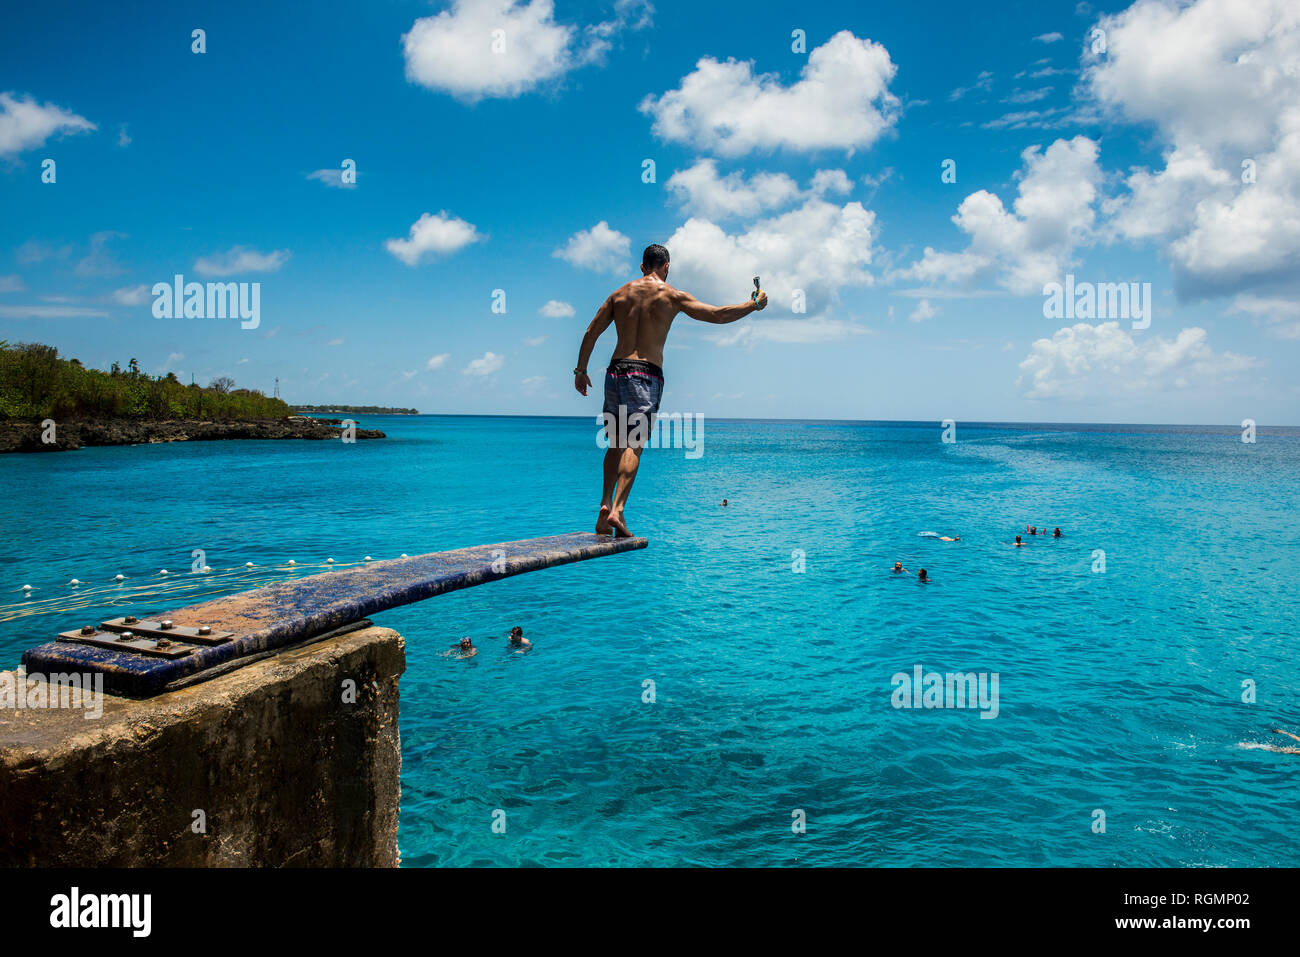 Caraibi, Colombia, San Andres, uomo sul trampolino sopra l'acqua turchese Foto Stock